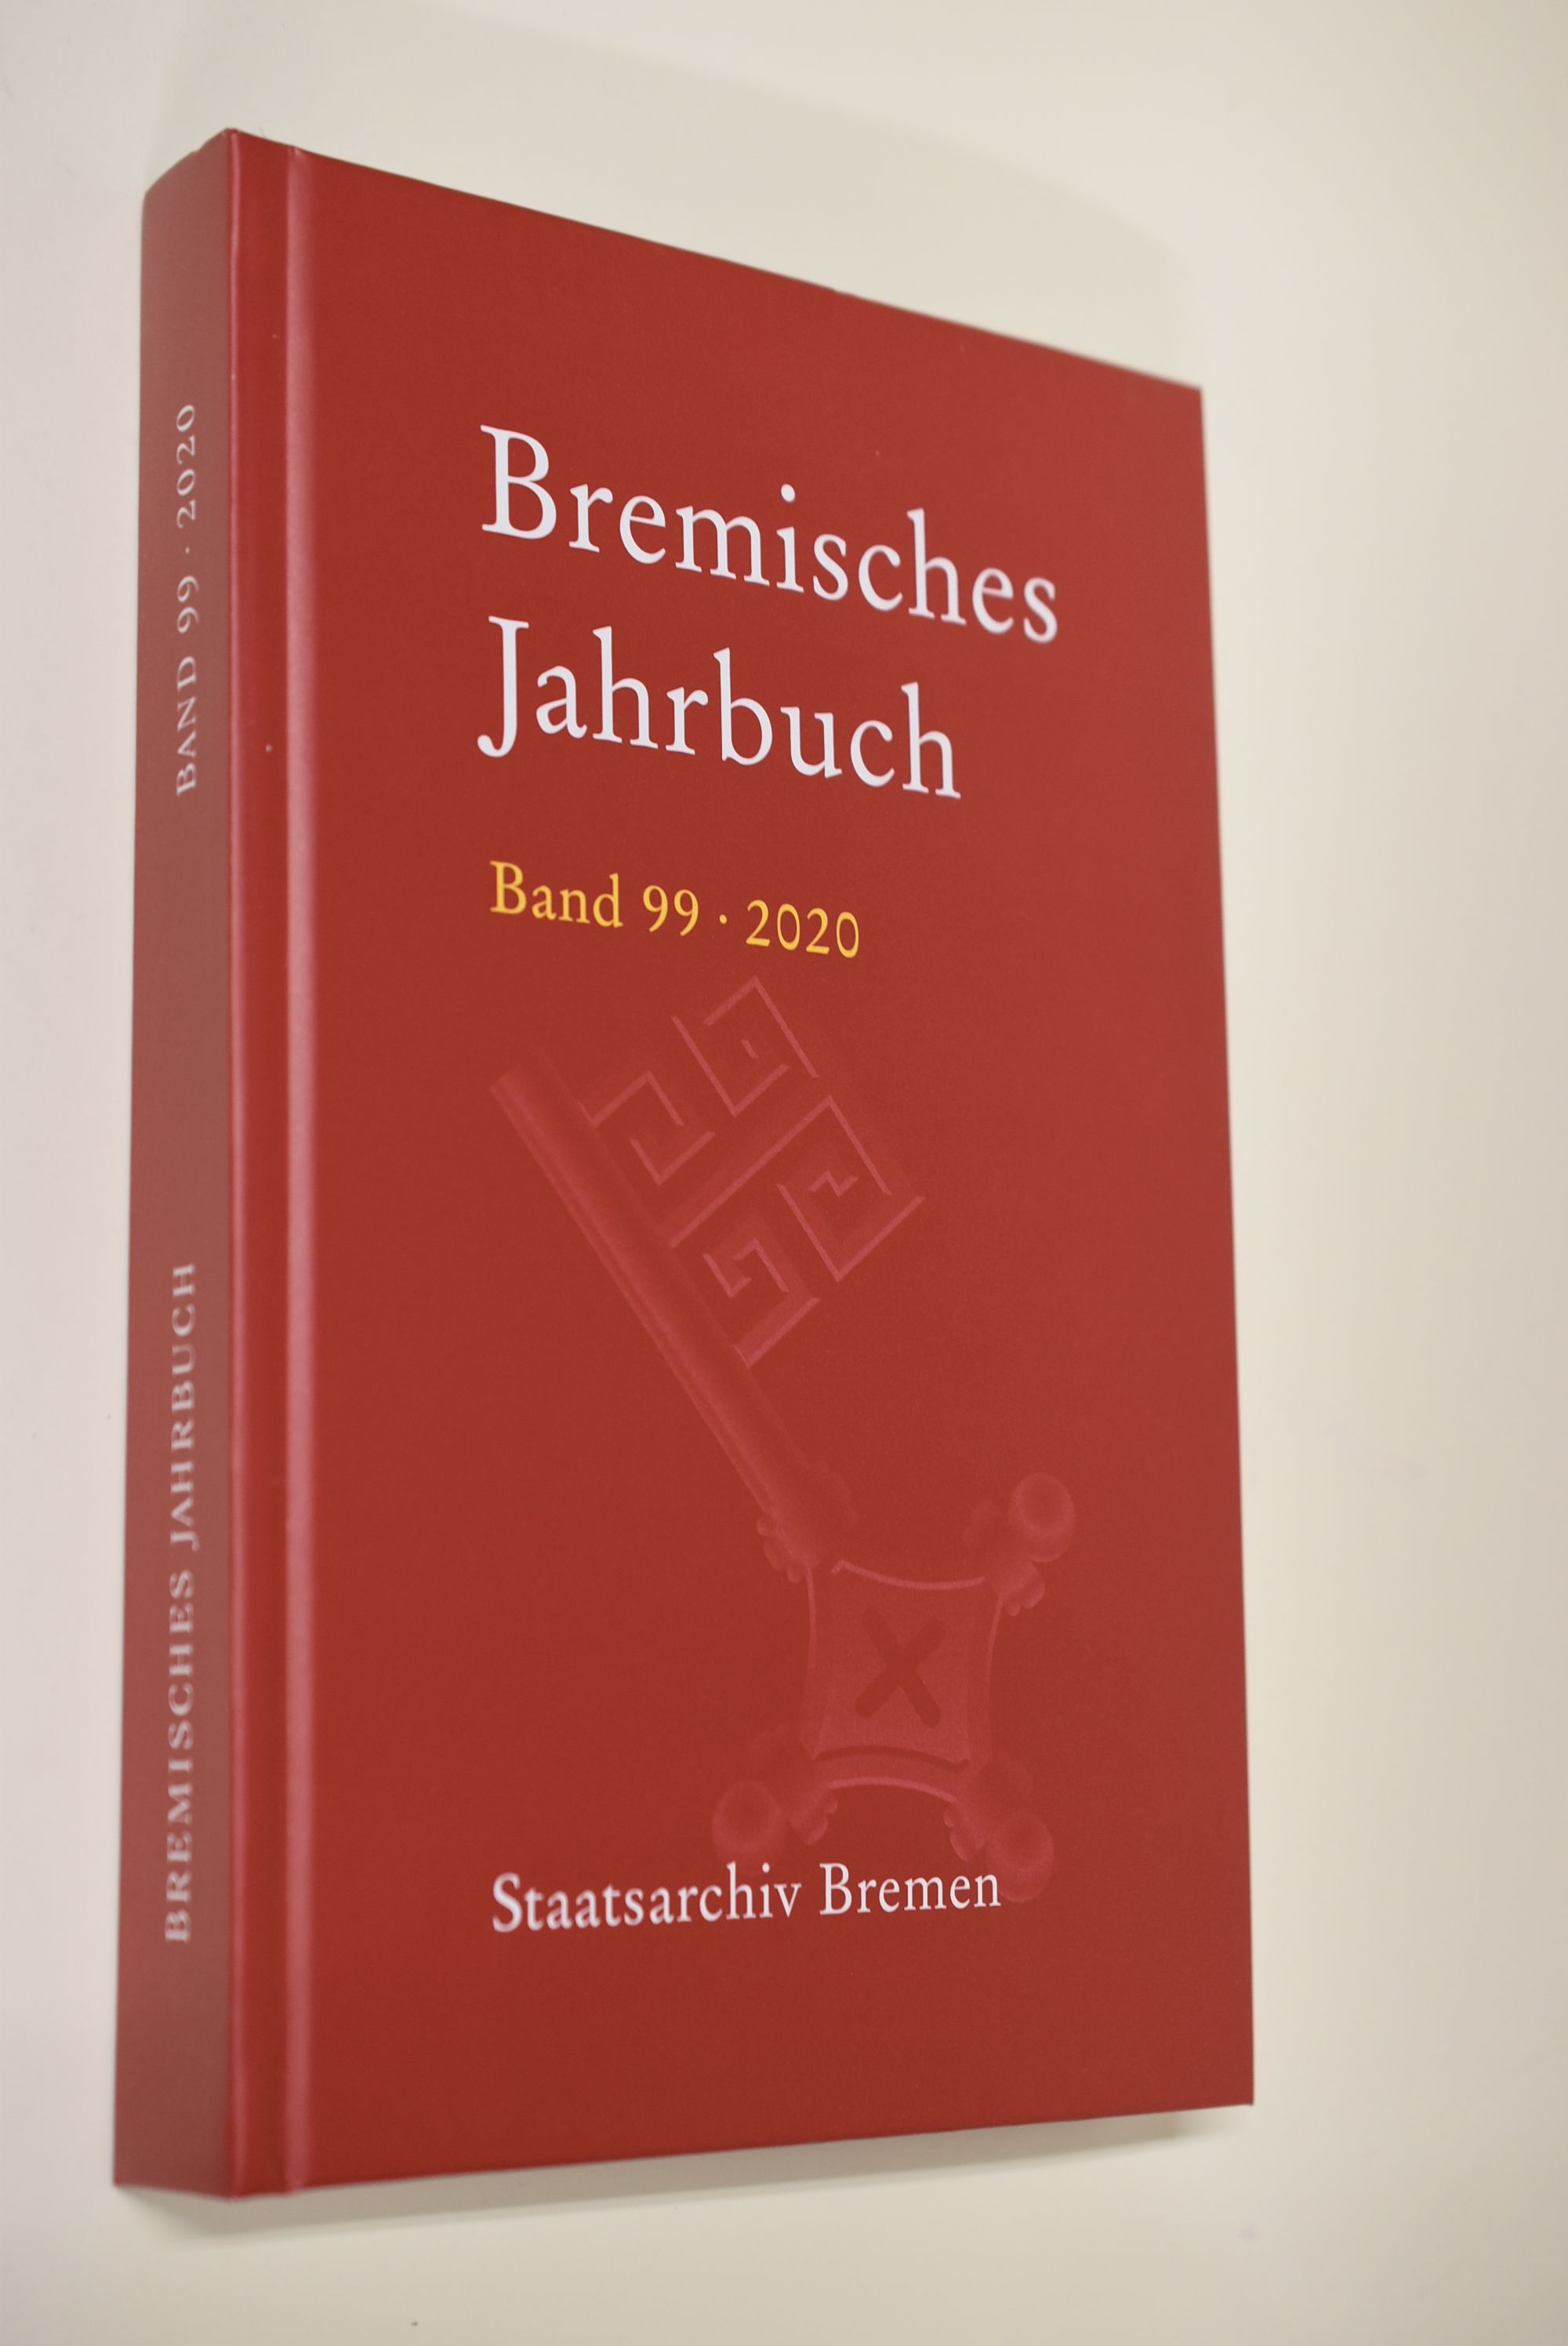 Bremisches Jahrbuch Band 99 (2020) in Verbindung mit der Historischen Gesellschaft Bremen herausgegeben vom Staatsarchiv - Bremen, Historische Gesellschaft und Konrad Elmshäuser